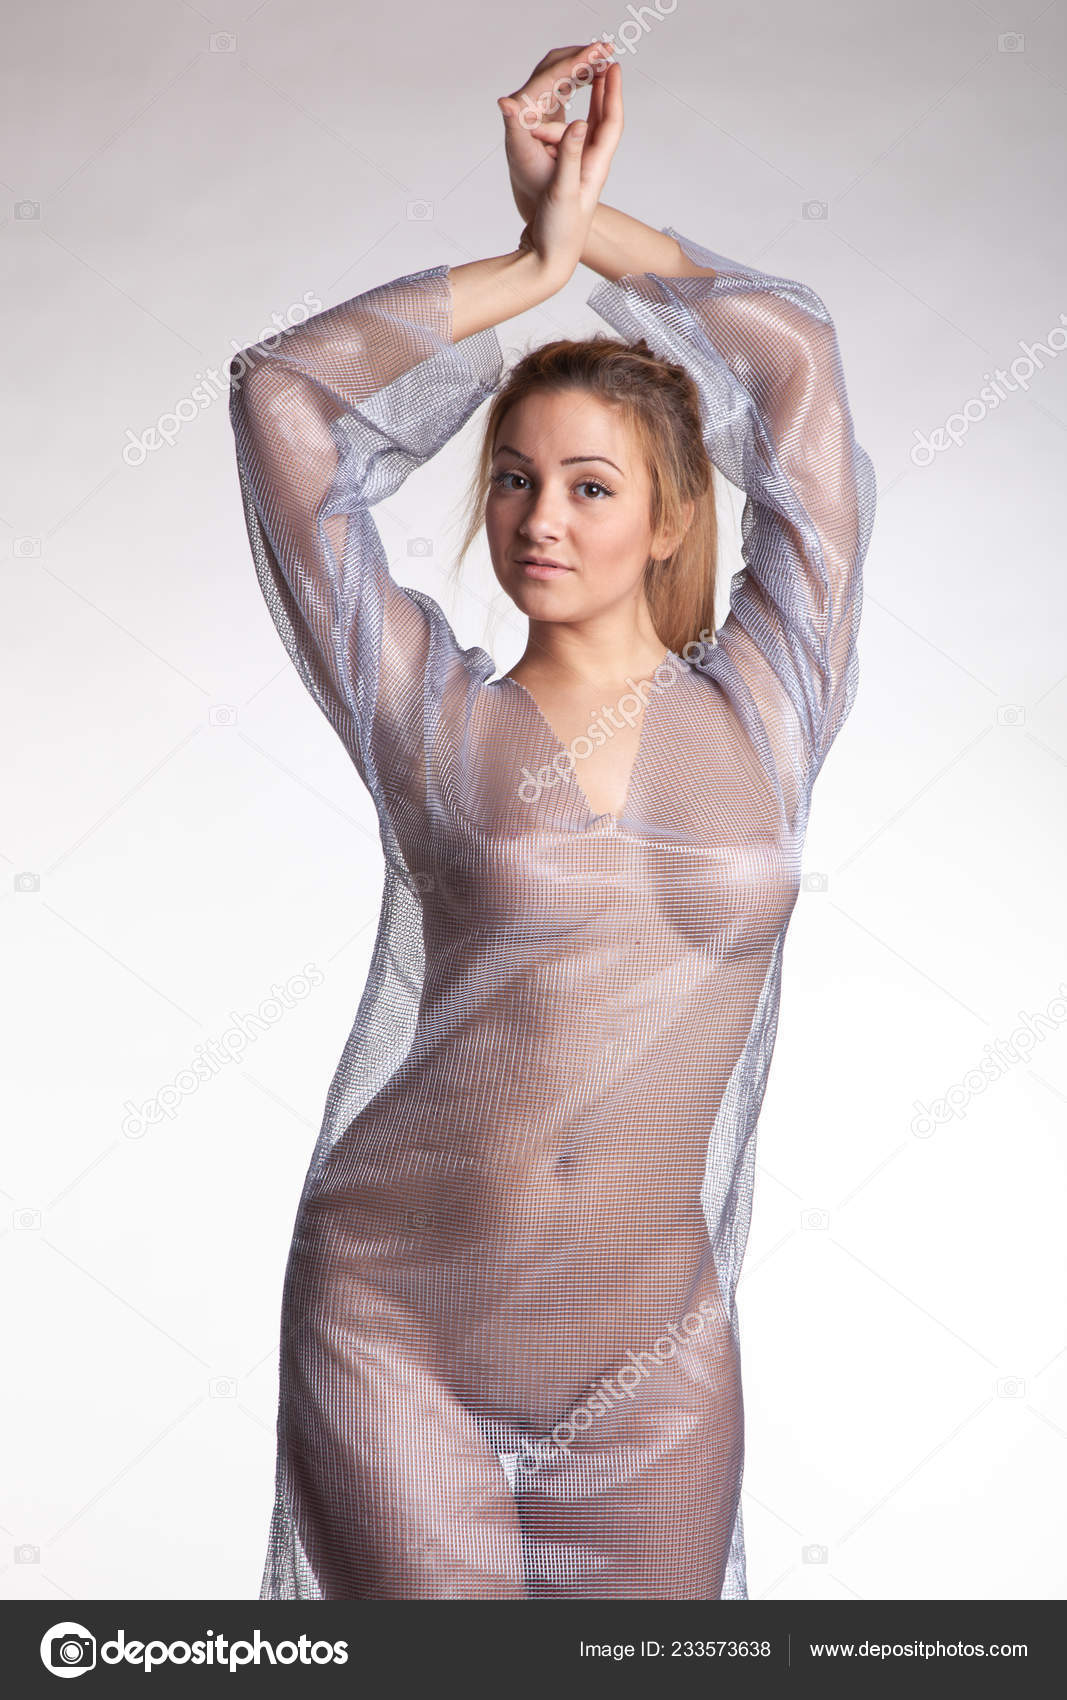 https://st4n.depositphotos.com/10086424/23357/i/1600/depositphotos_233573638-stock-photo-young-beautiful-girl-posing-nude.jpg